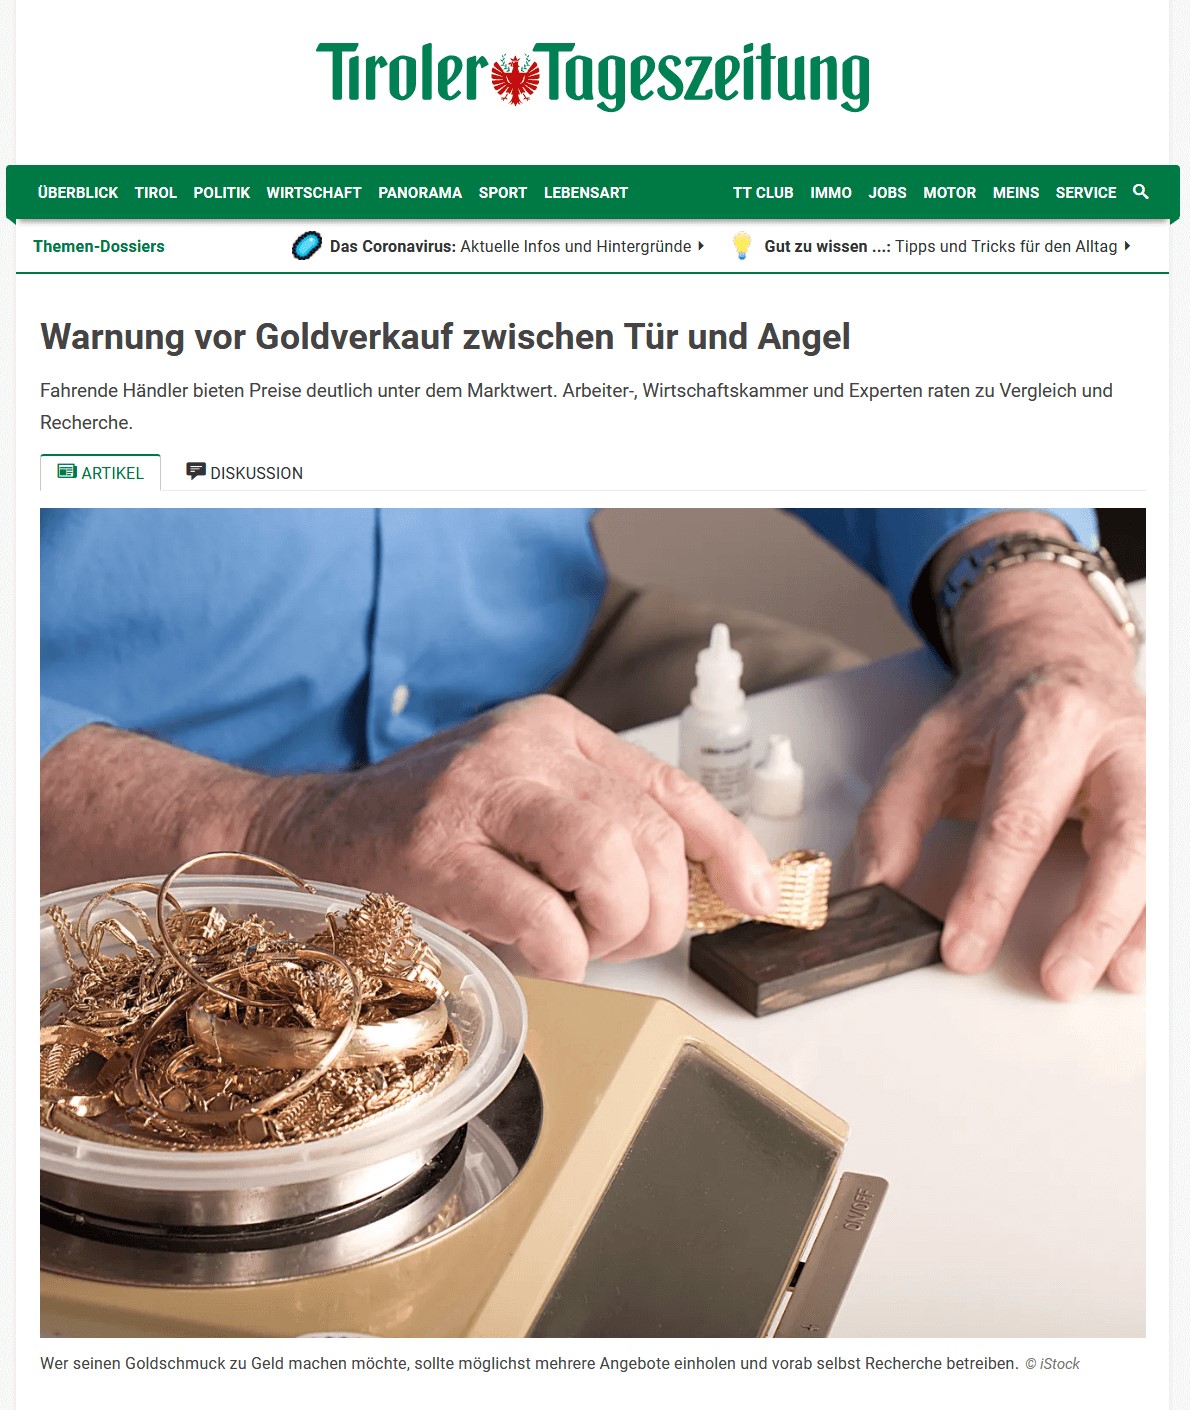 Warnung vor Goldverkauf zwischen Tür und Angel Tiroler Tageszeitung